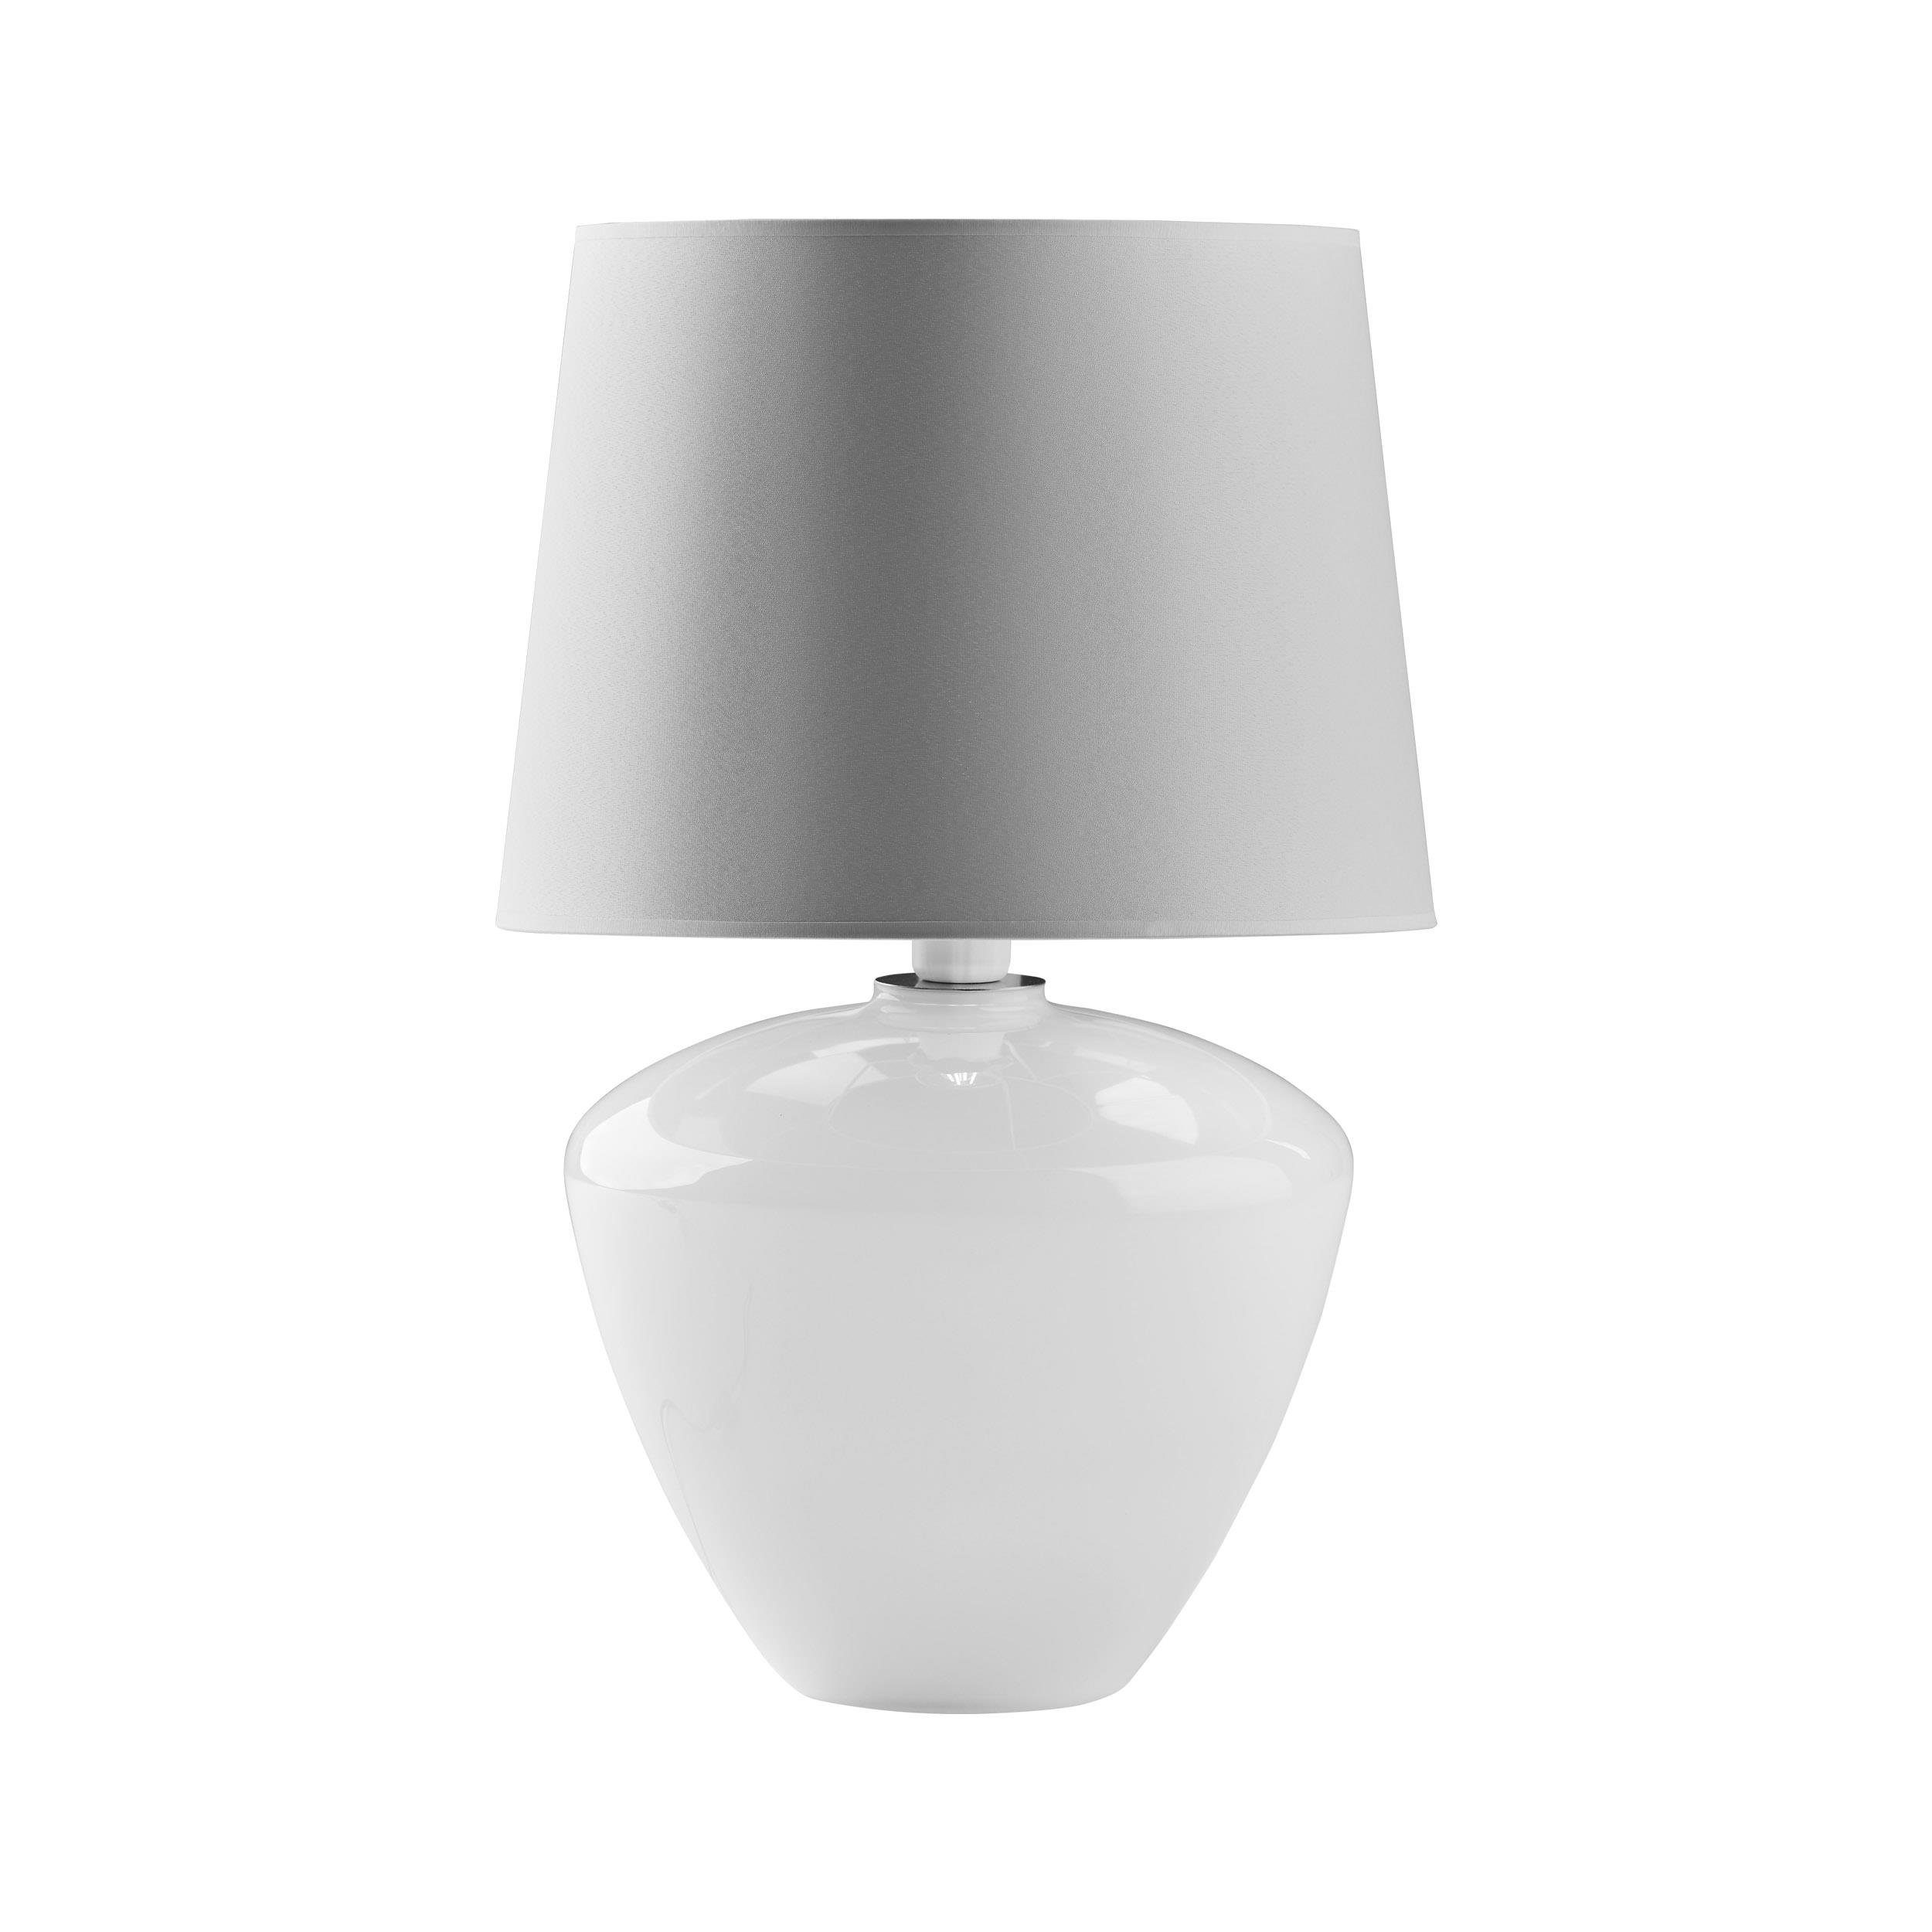 Signature Home Collection Nachttischlampe Glaslampe schwarz weiß bauchig mit Lampenschirm Stoff, ohne Leuchtmittel, warmweiß